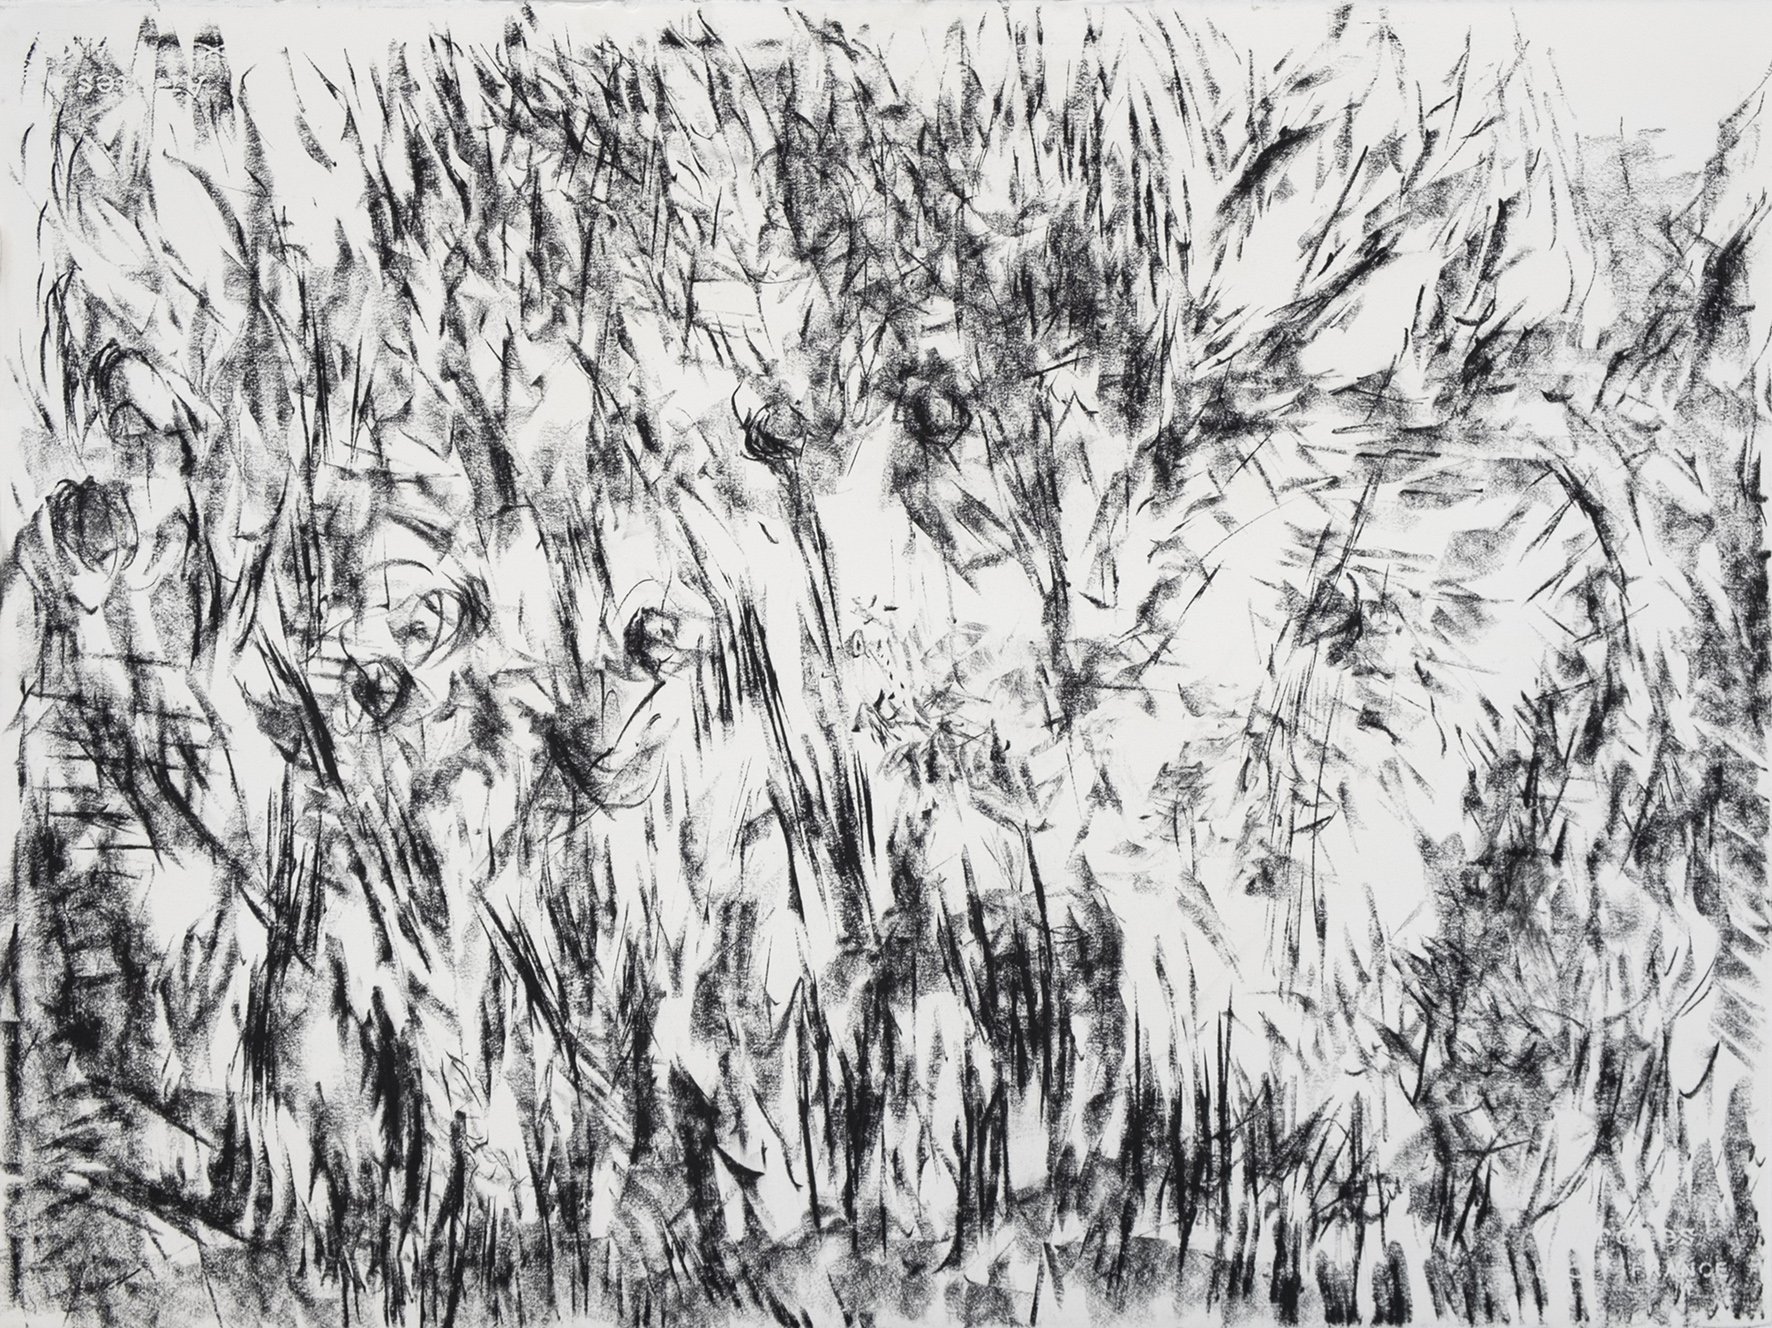  Ensemble d’arbres, Annecy 2021, fusain sur papier arche, H61 x L76 cm  